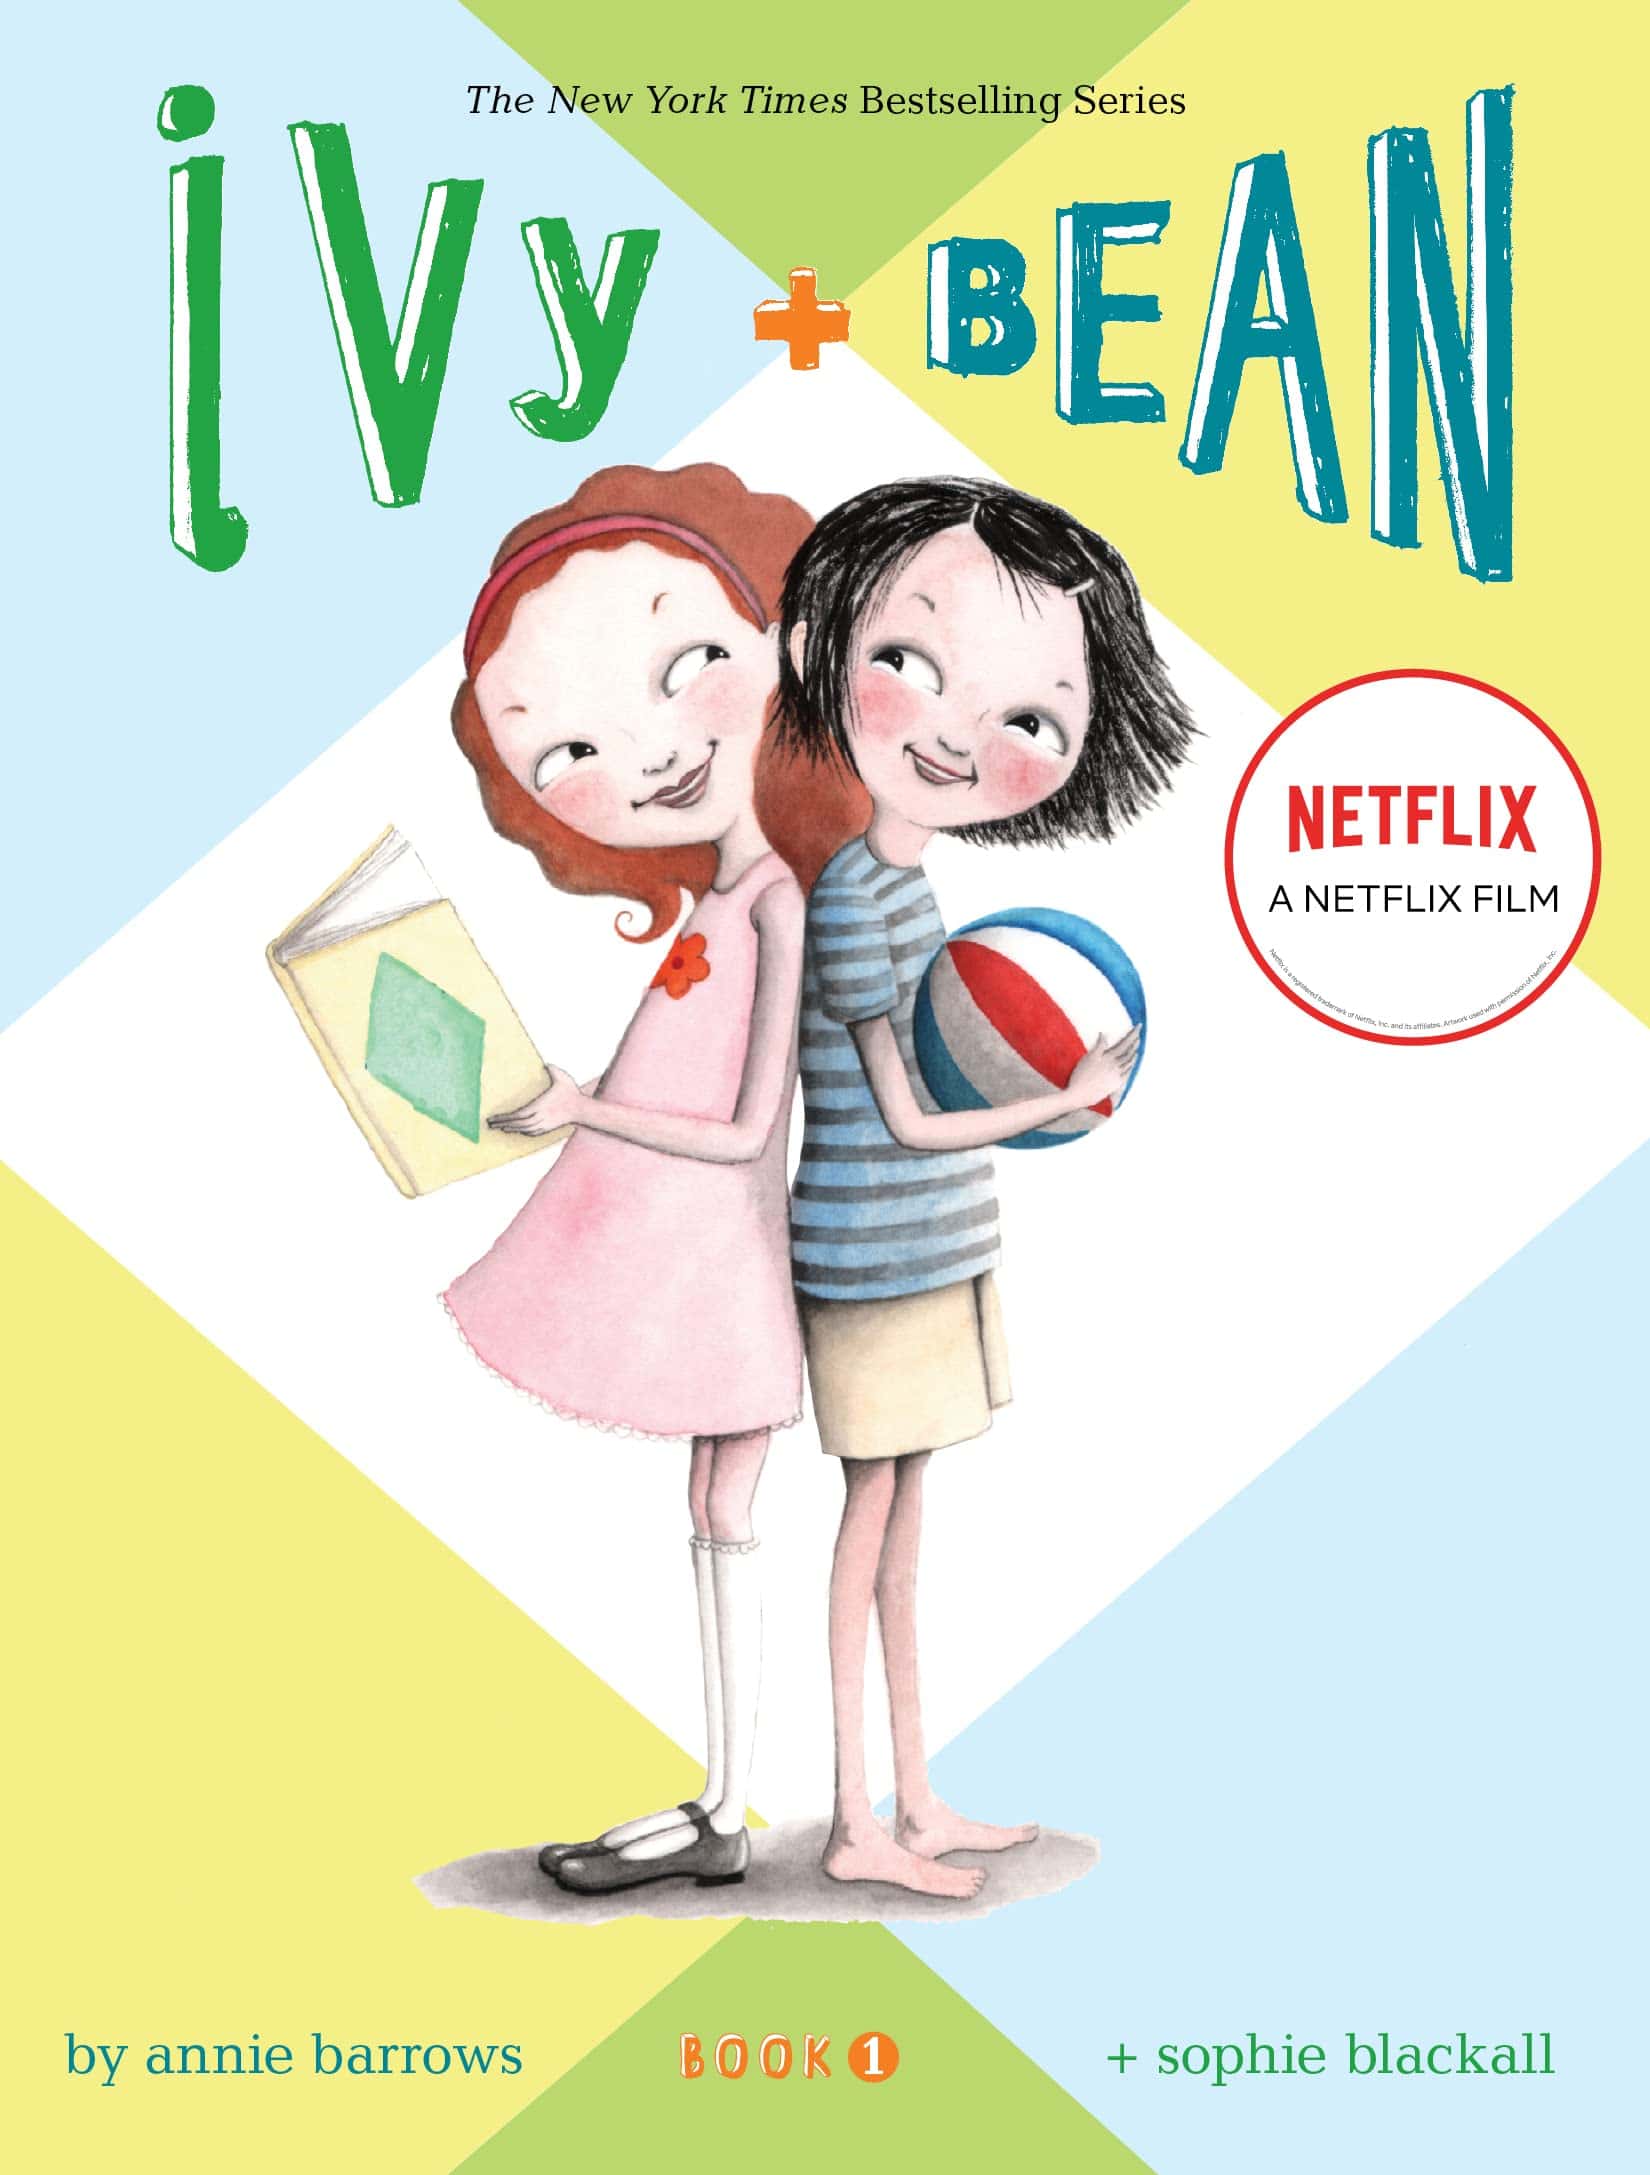 "Ivy + Bean" by Annie Barrows